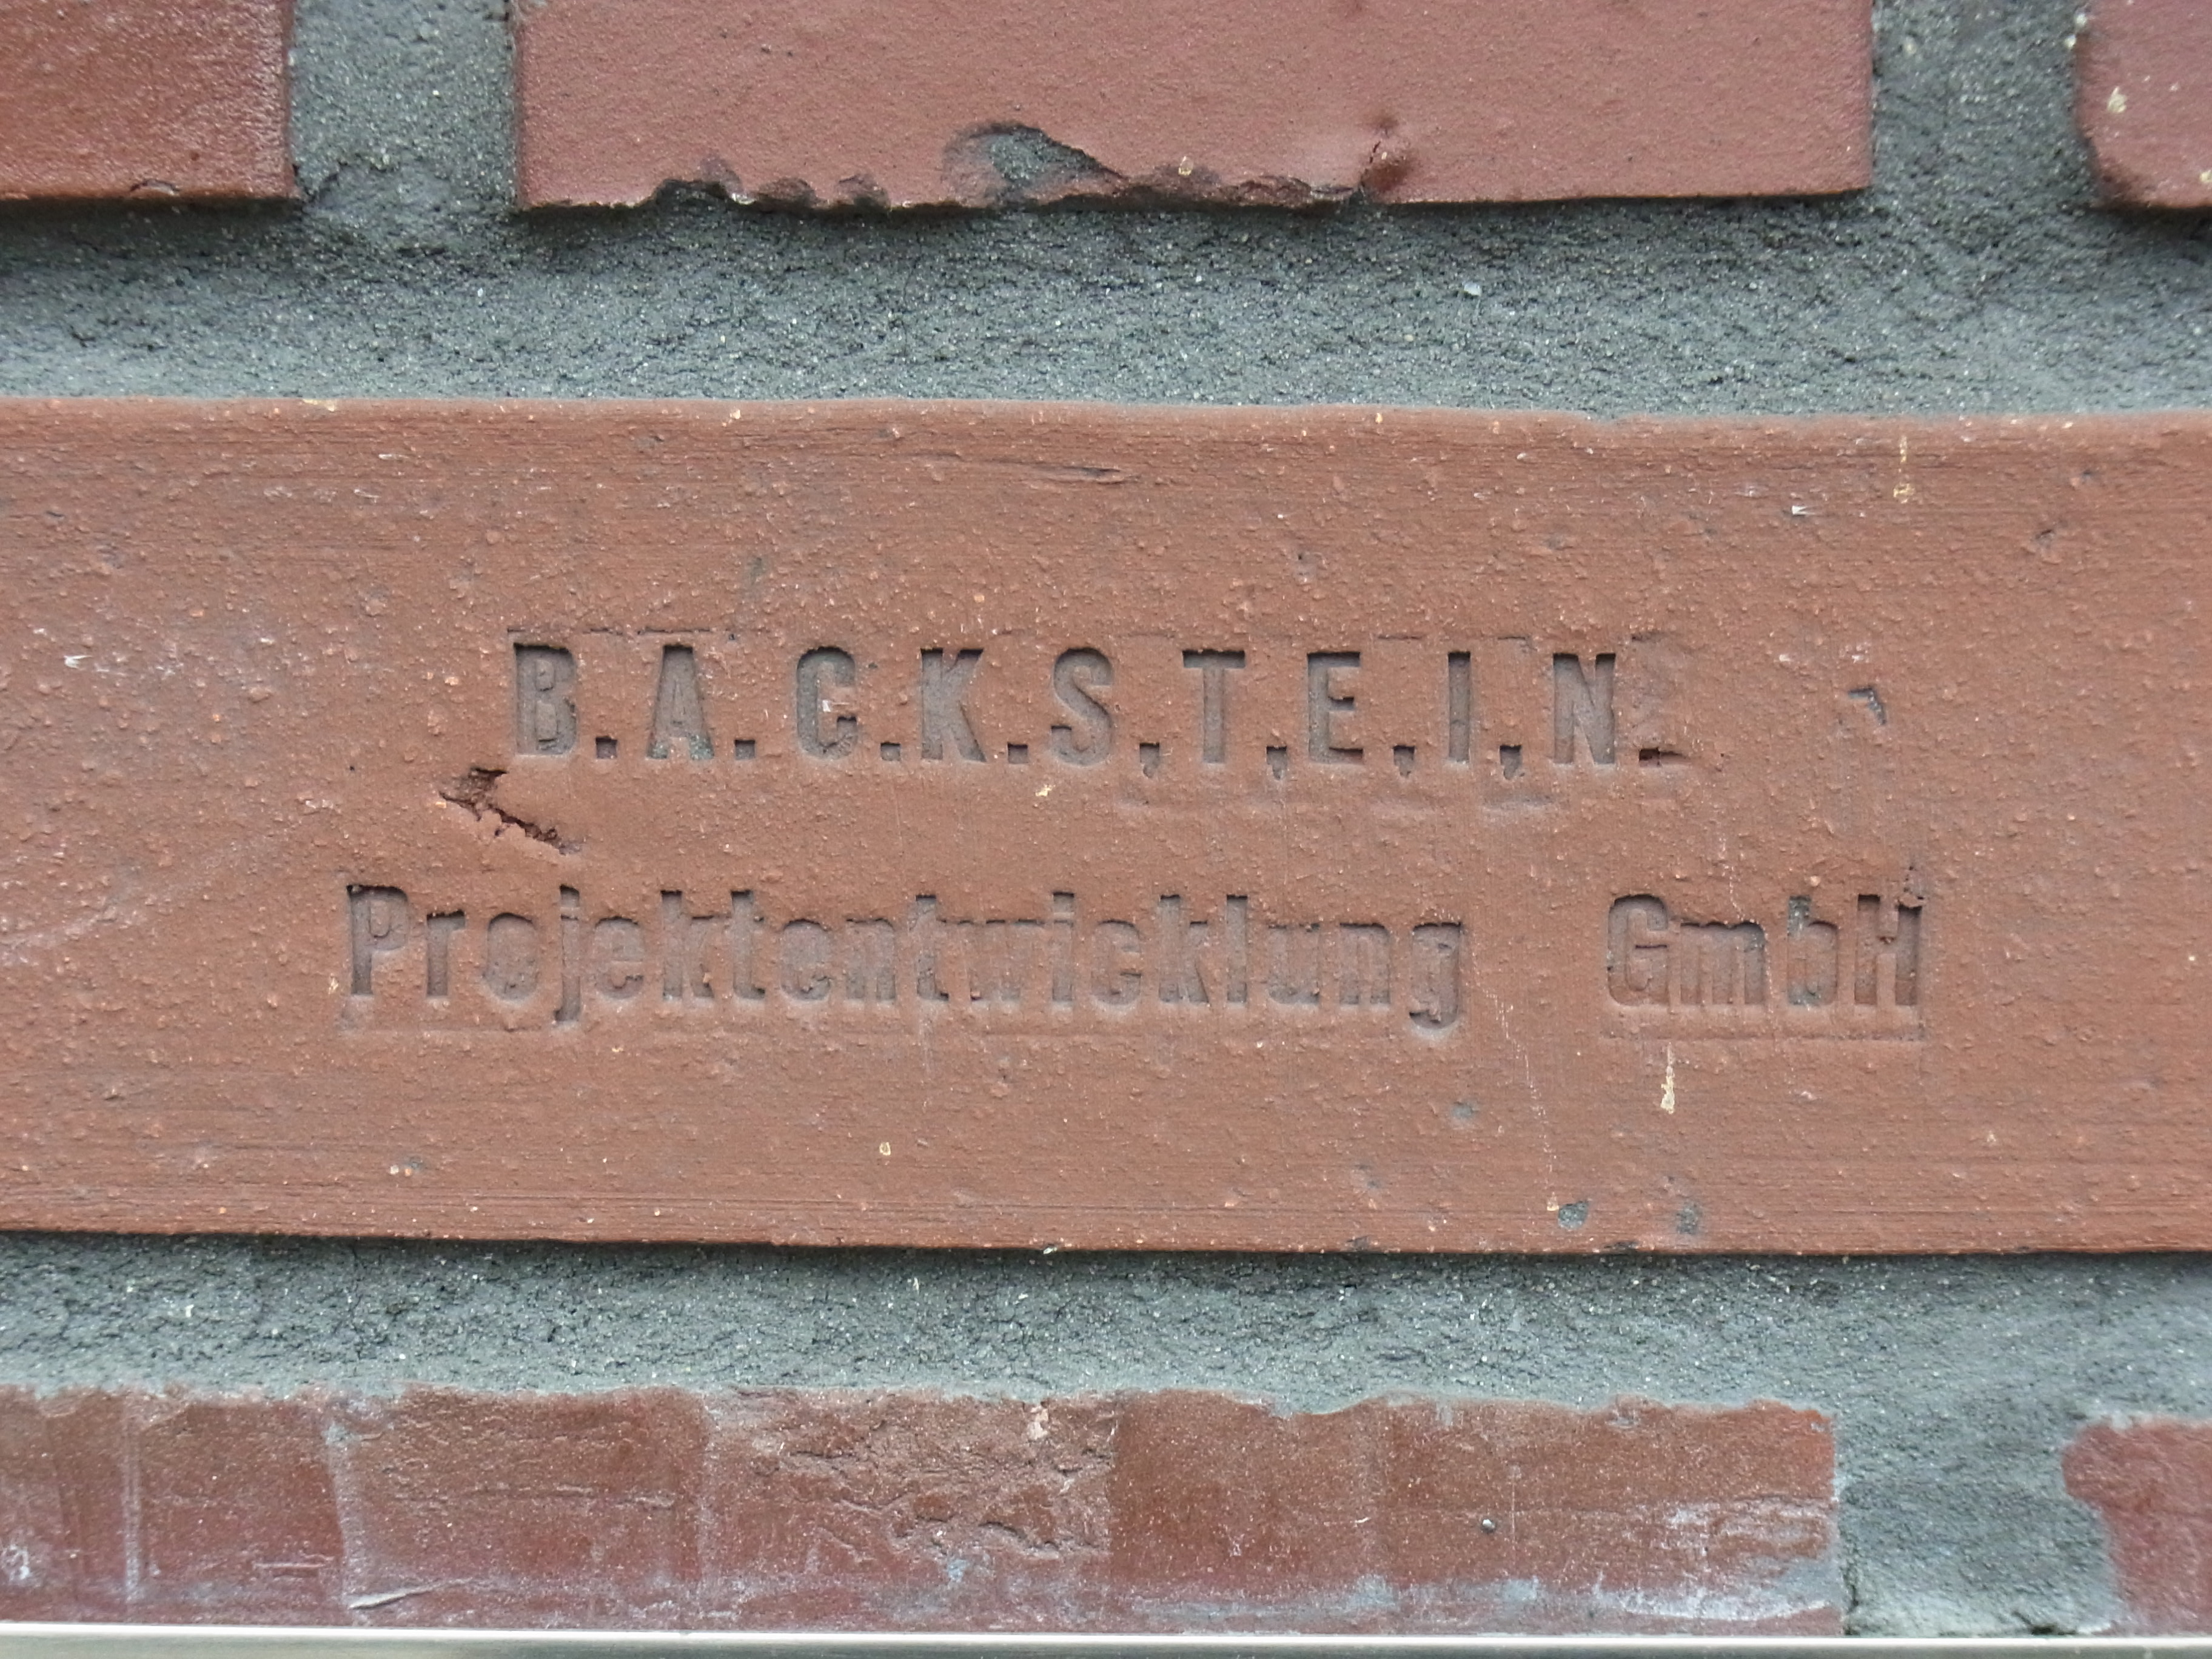 Backstein Projektentwicklung GmbH